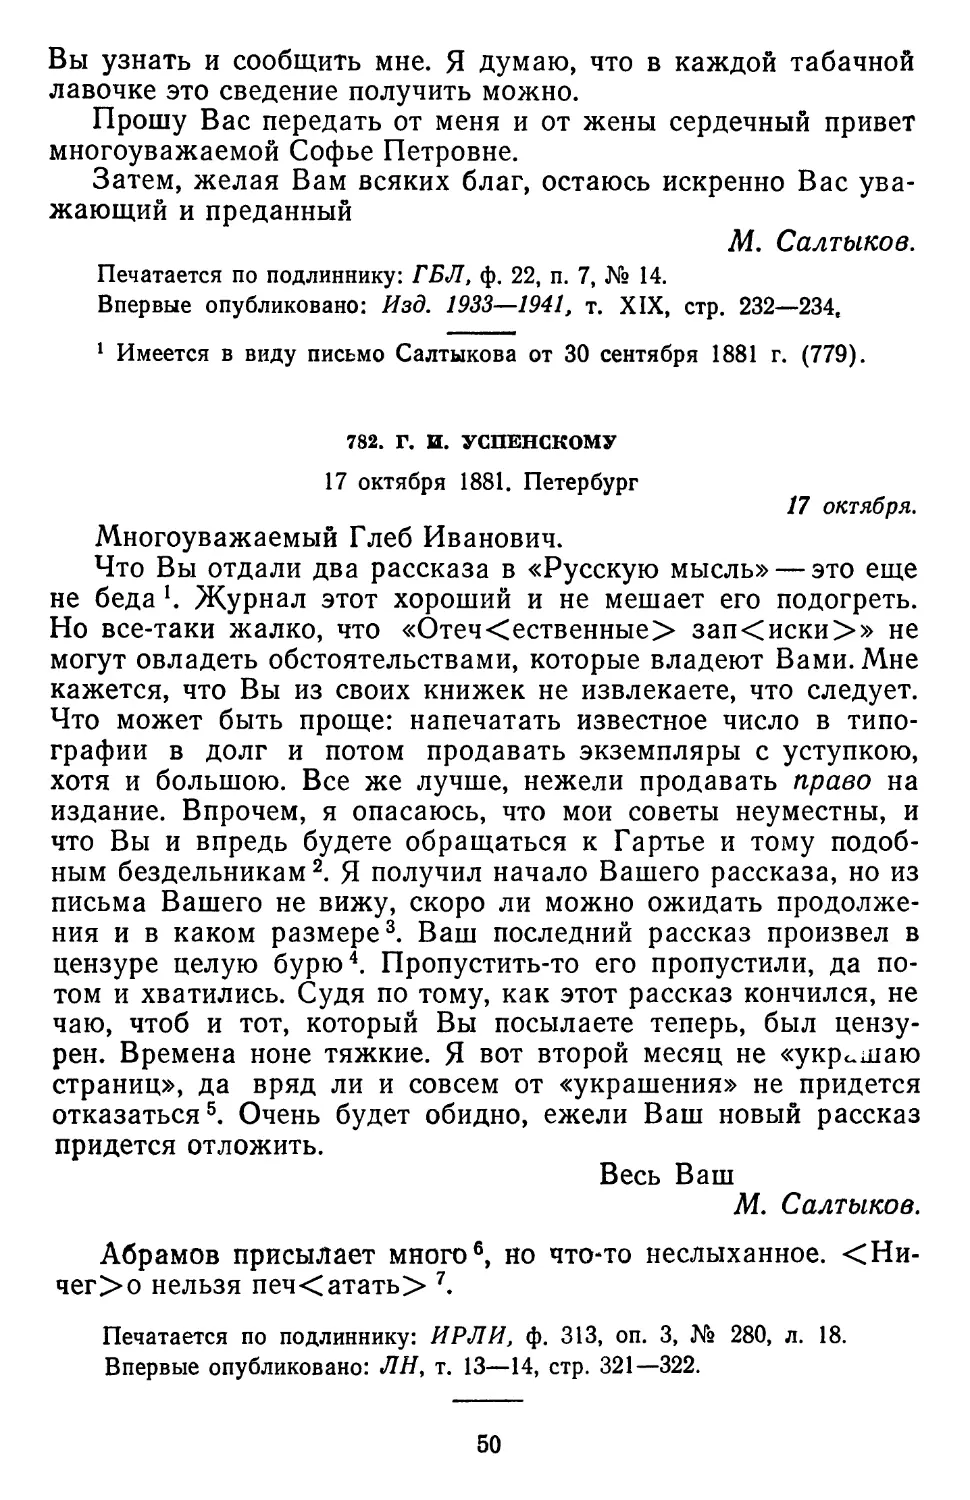 782.Г.И. Успенскому. 17 октября 1881. Петербург